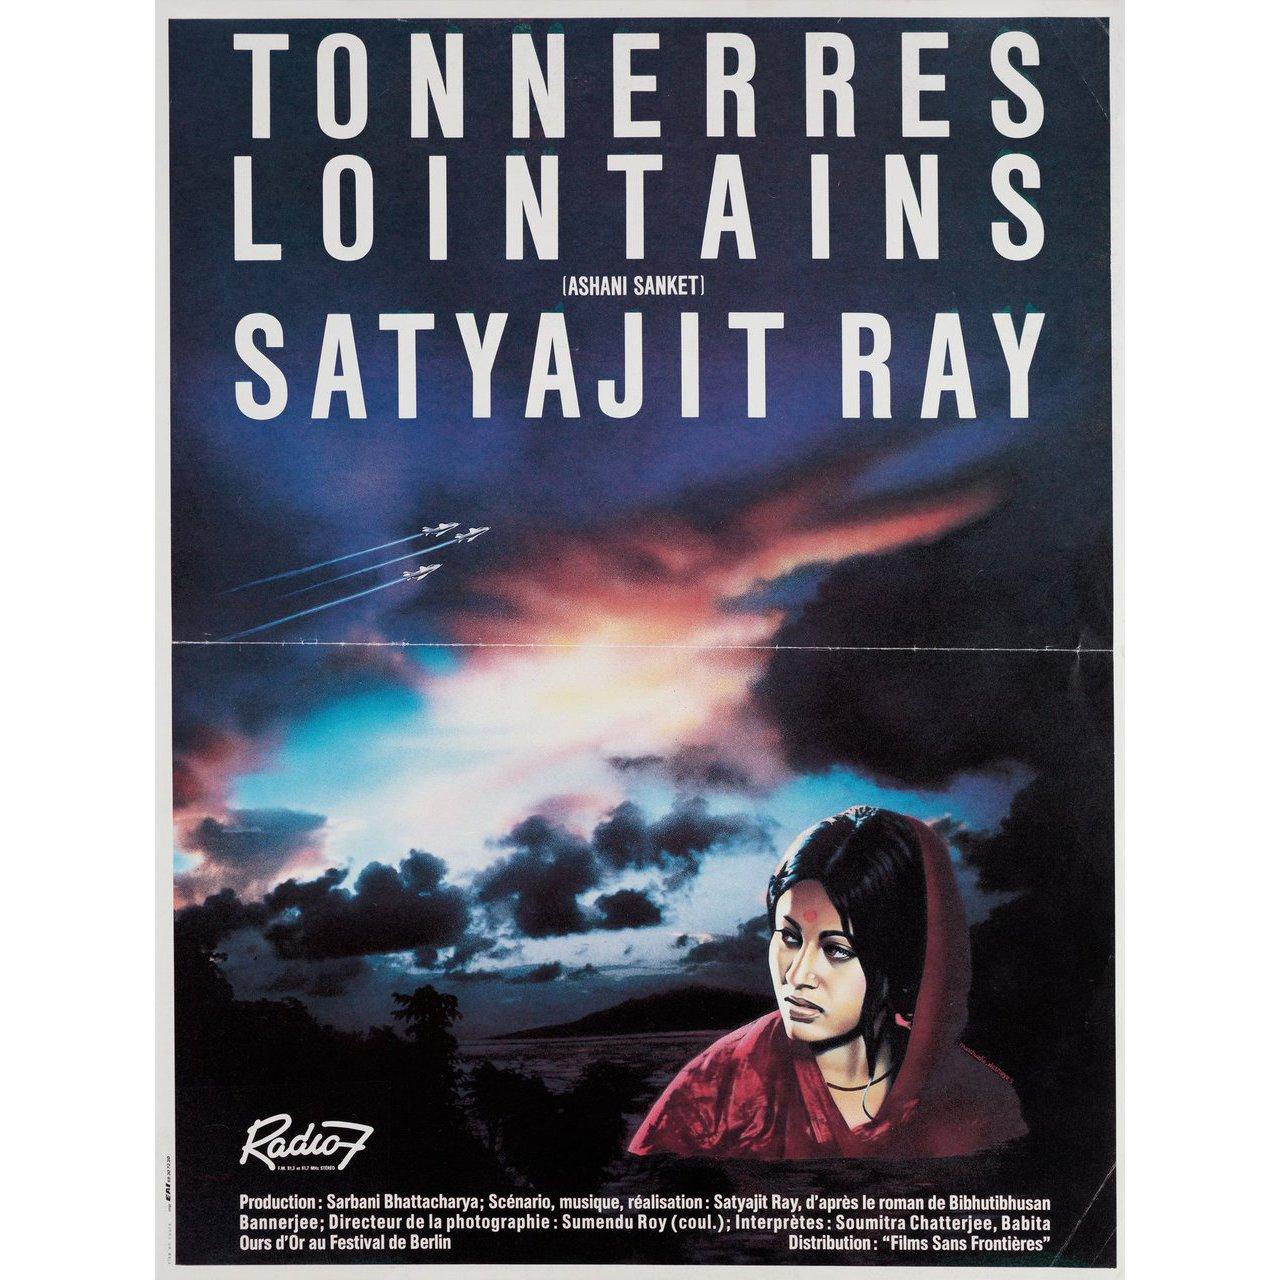 Originales französisches Kleinplakat von 1985 für den ersten französischen Kinostart des Films Distant Thunder (Ashani Sanket) von 1973 unter der Regie von Satyajit Ray mit Soumitra Chatterjee / Babita Kapoor / Sandhya Roy / Chitra Banerjee. Sehr